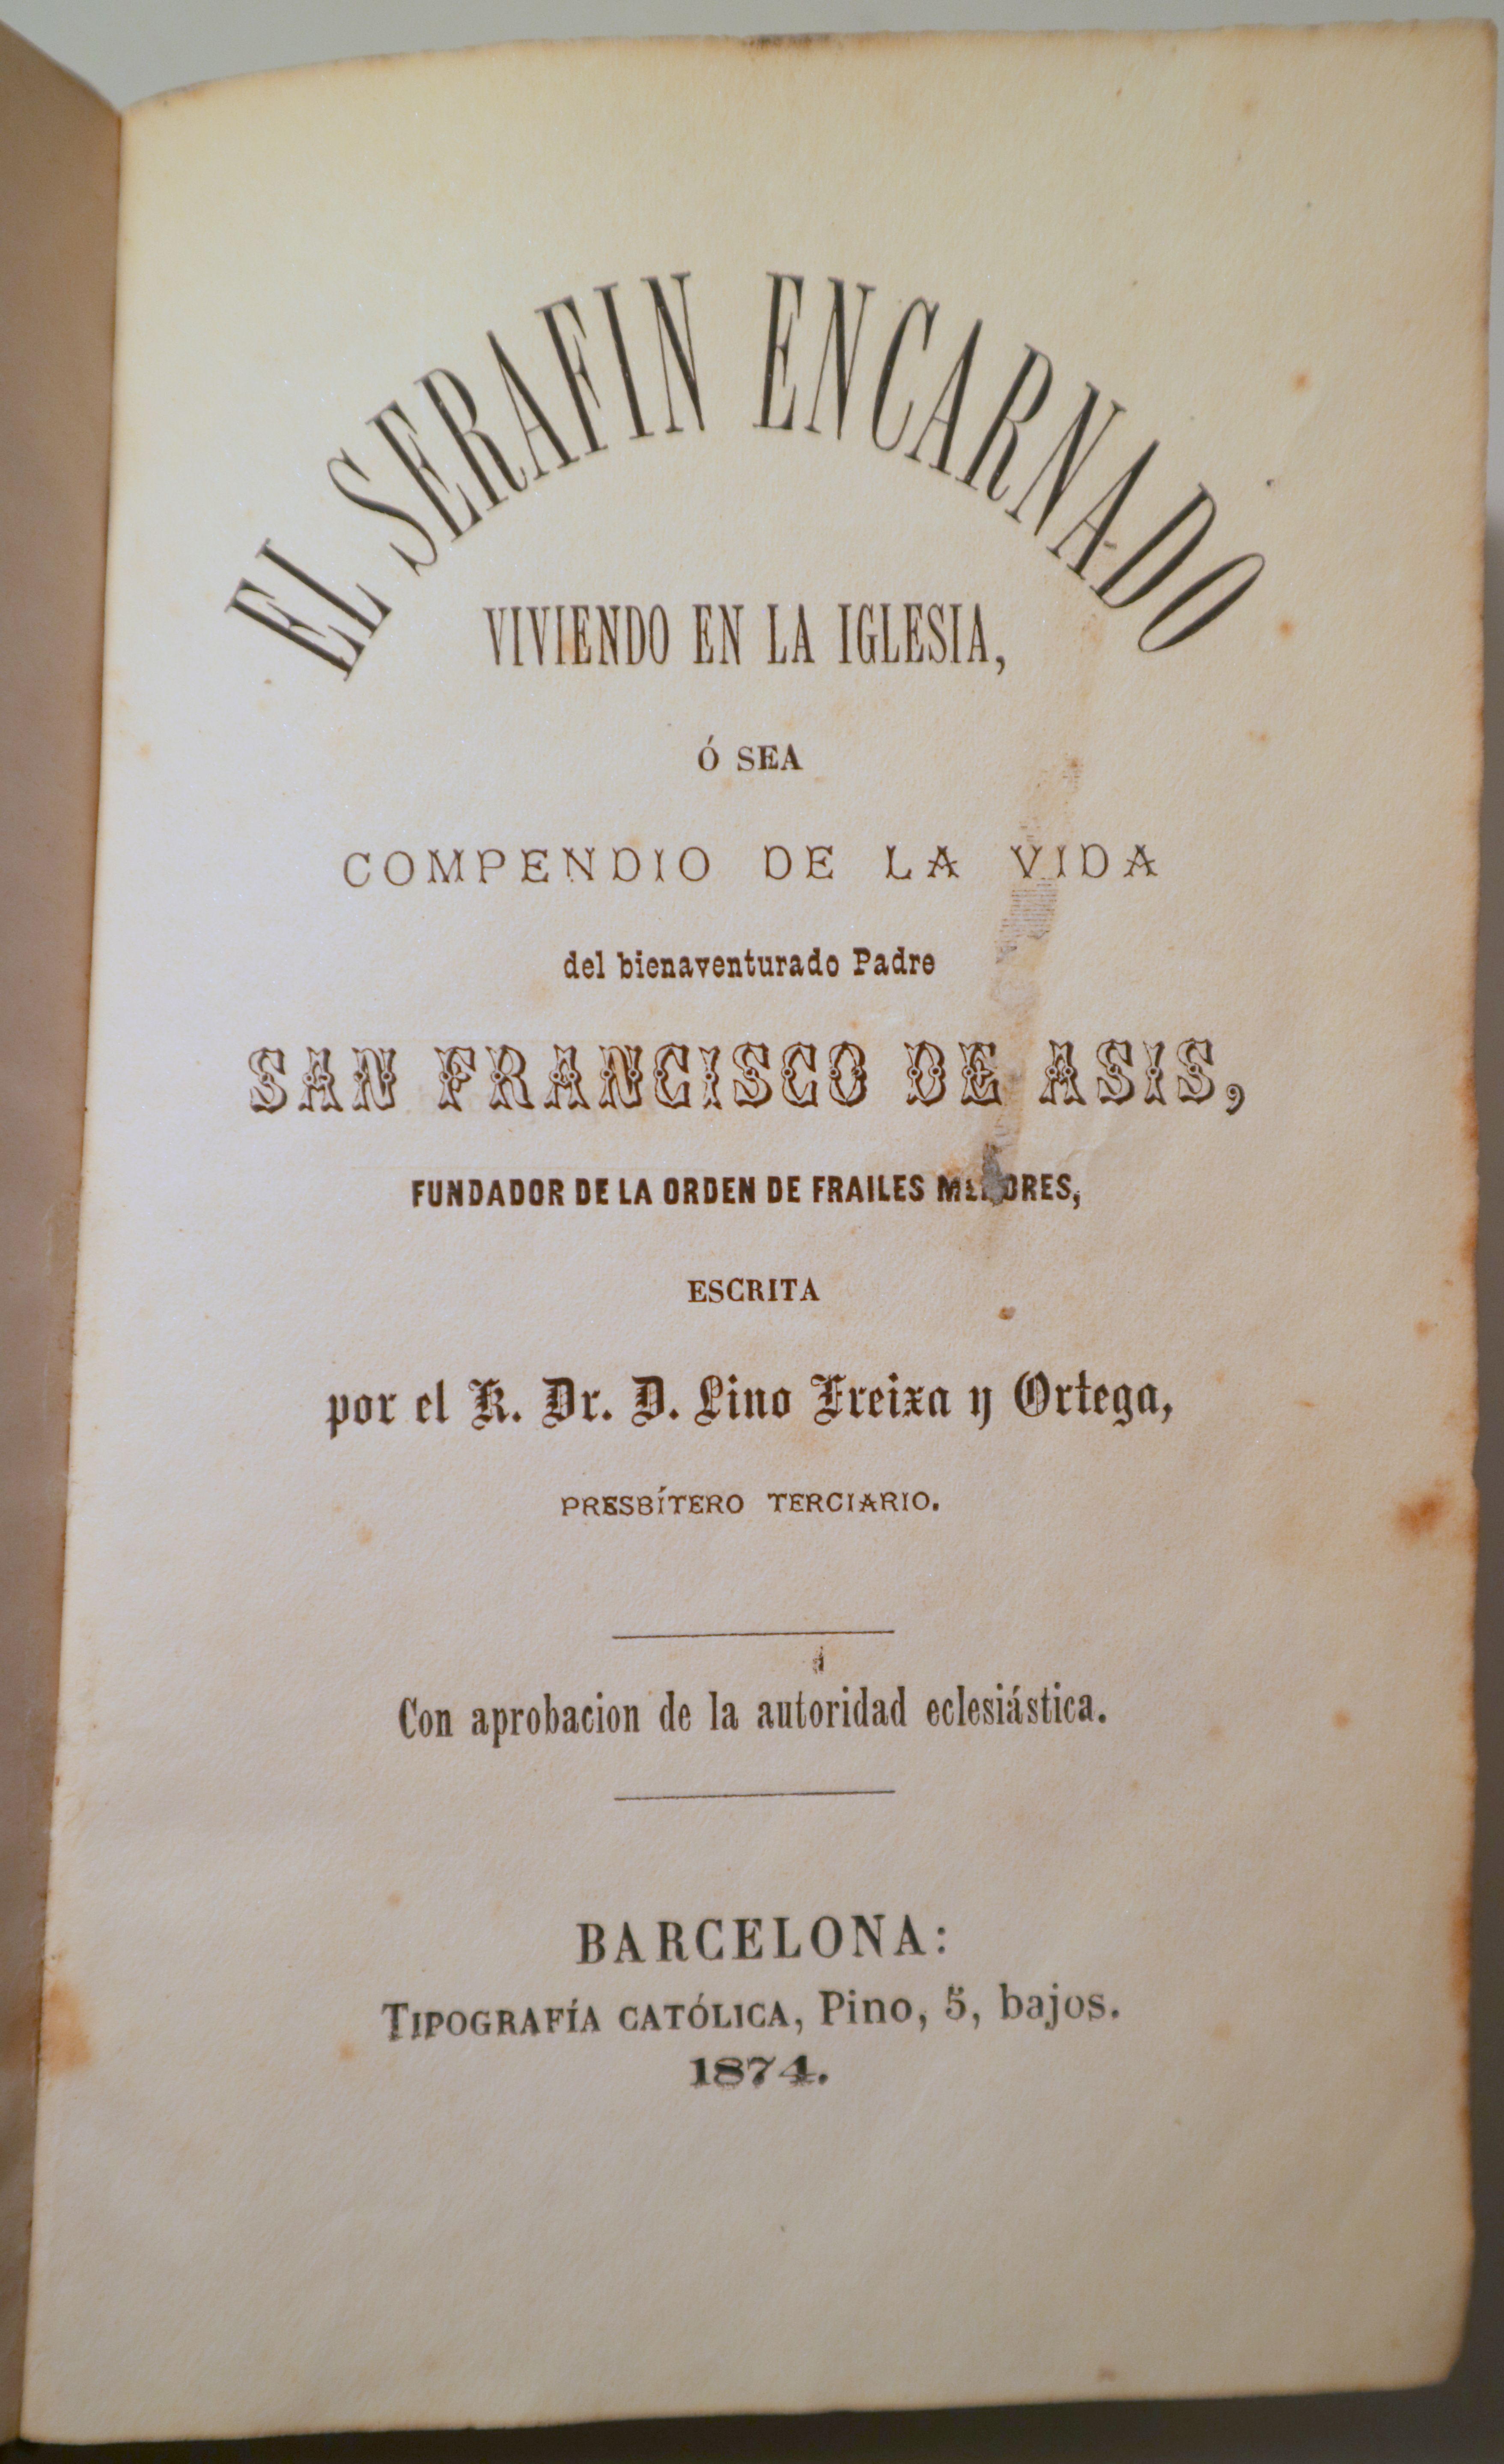 EL SERAFIN ENCARNADO. Vida de San Francisco de Asís - Barcelona 1874